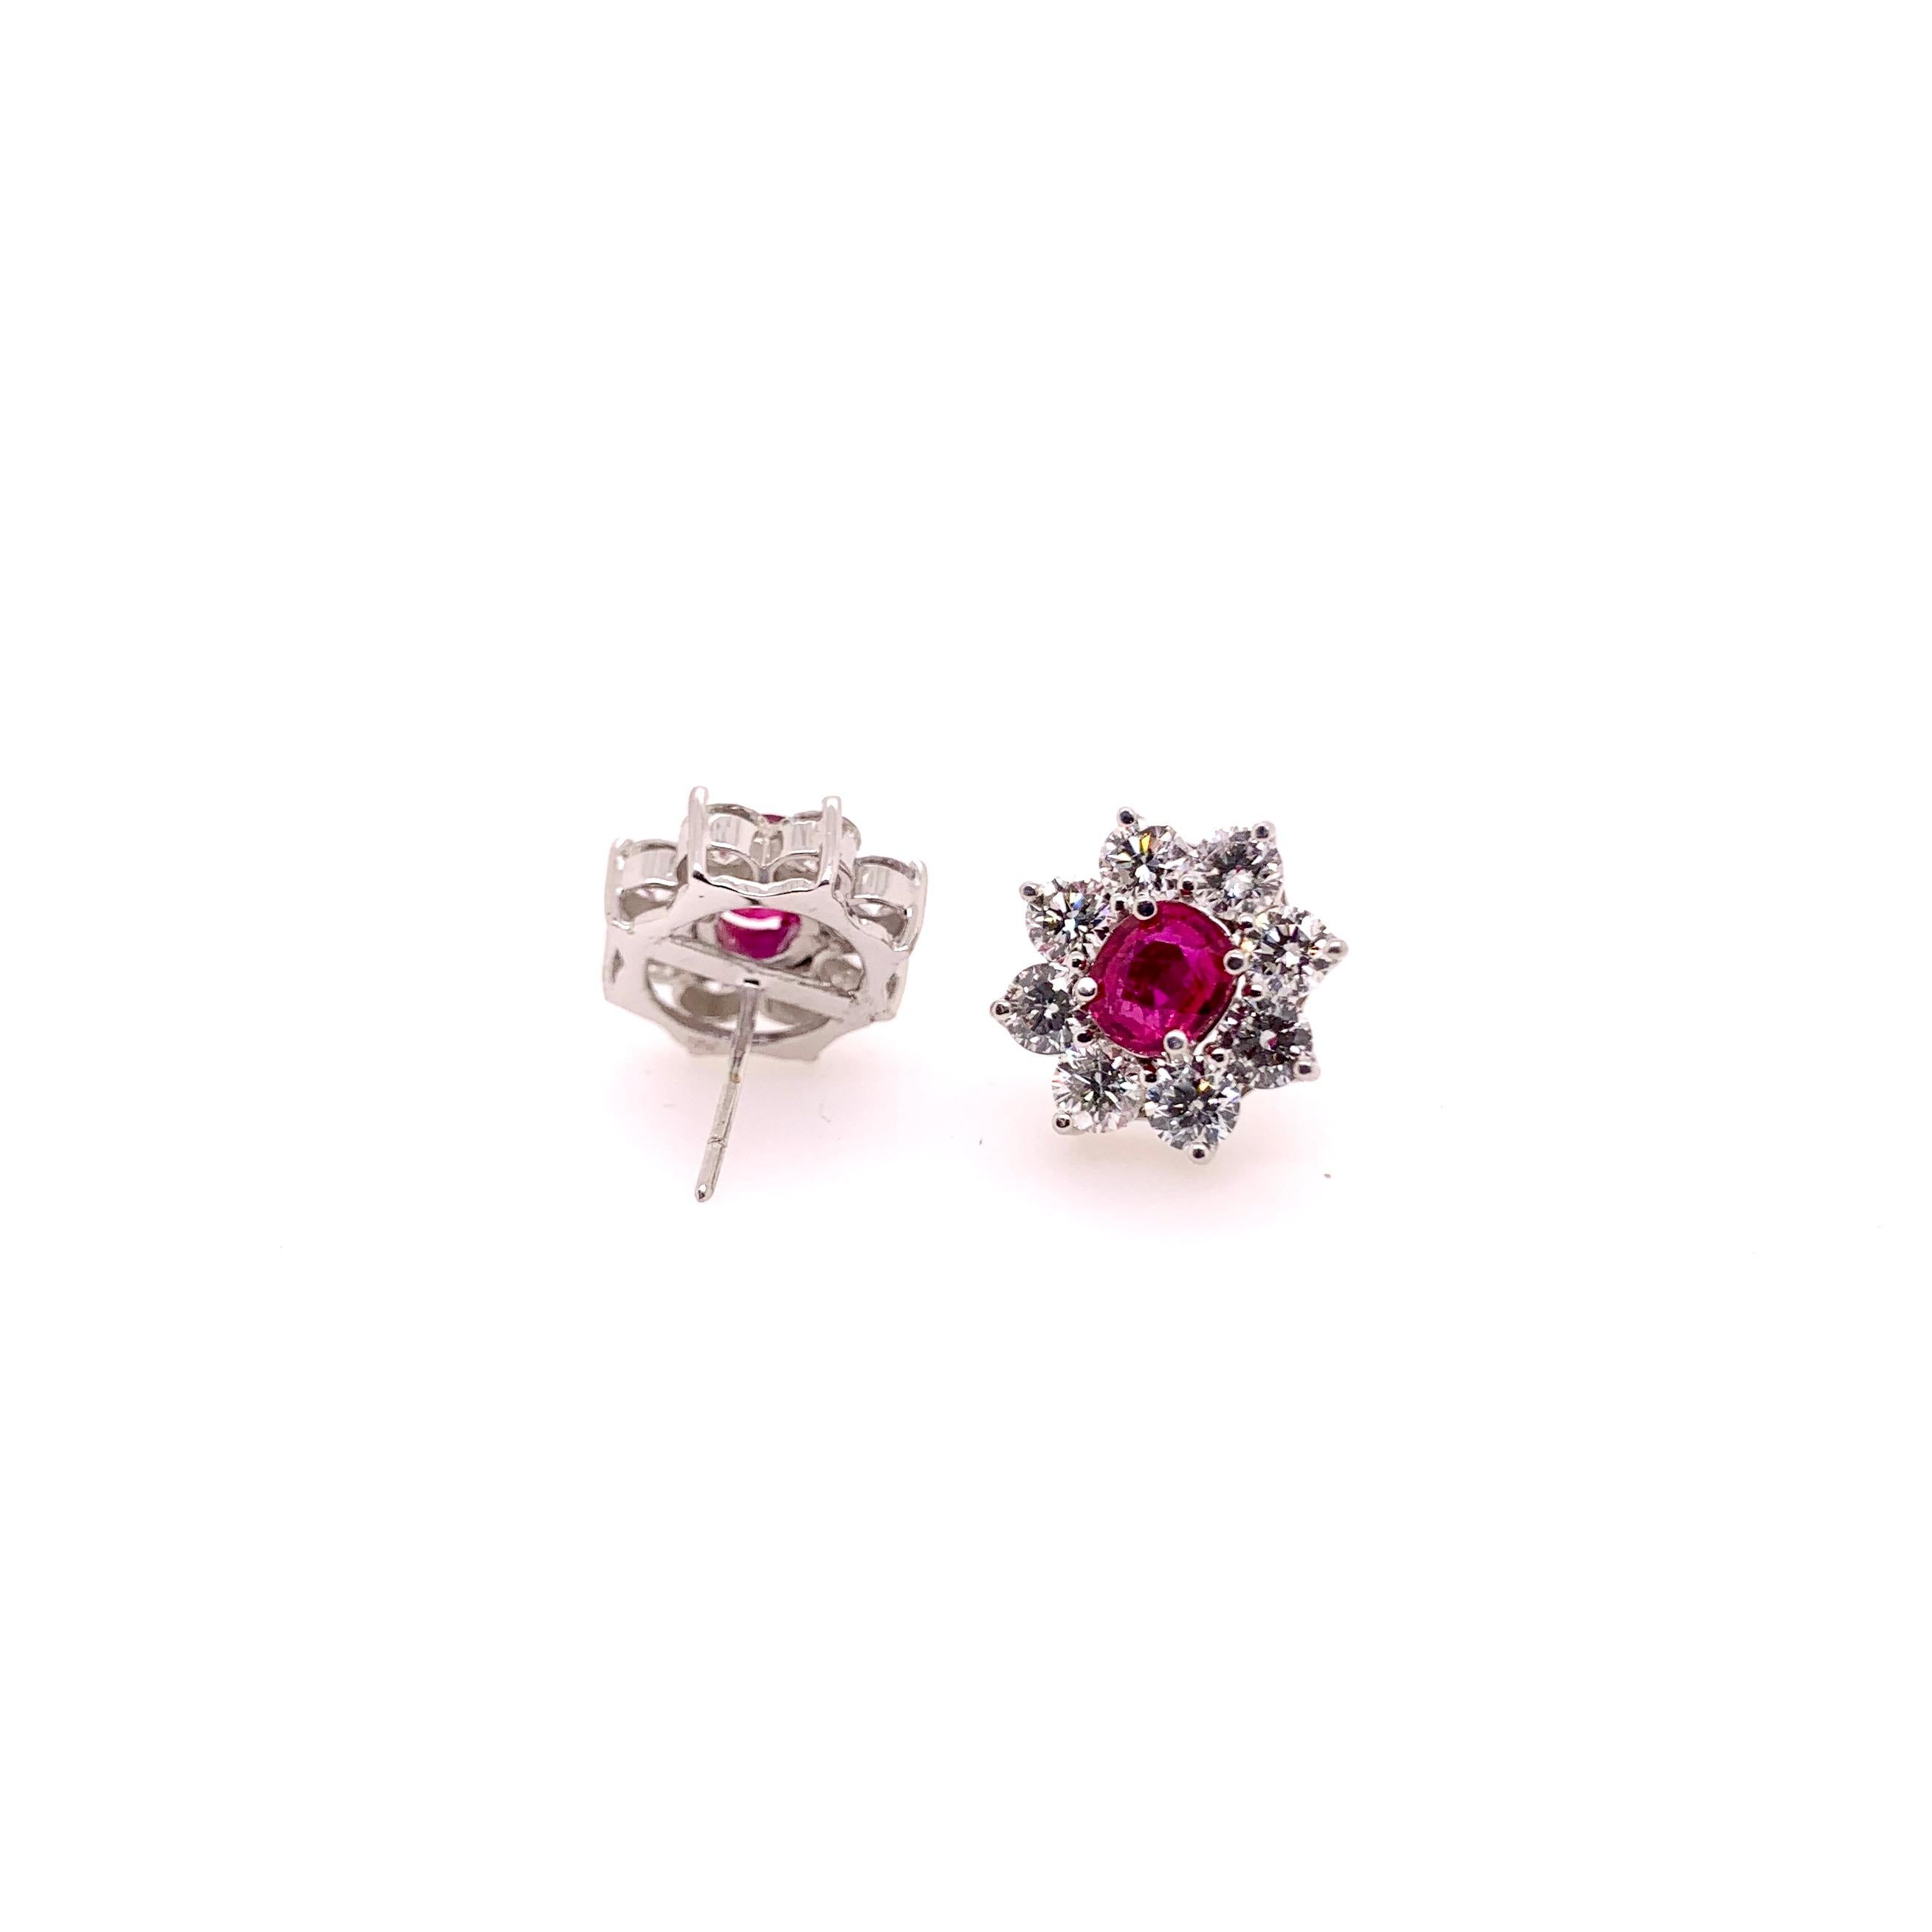 Diese ikonischen, floralen Rubin- und Diamantohrringe sind ein Muss in jeder Schmucksammlung.  Die Rubine sind gut abgestimmt mit seiner atemberaubenden roten rosa Farbtönen und hat großzügige Größe Runde Brillanten, die sie umgeben.  Dieser